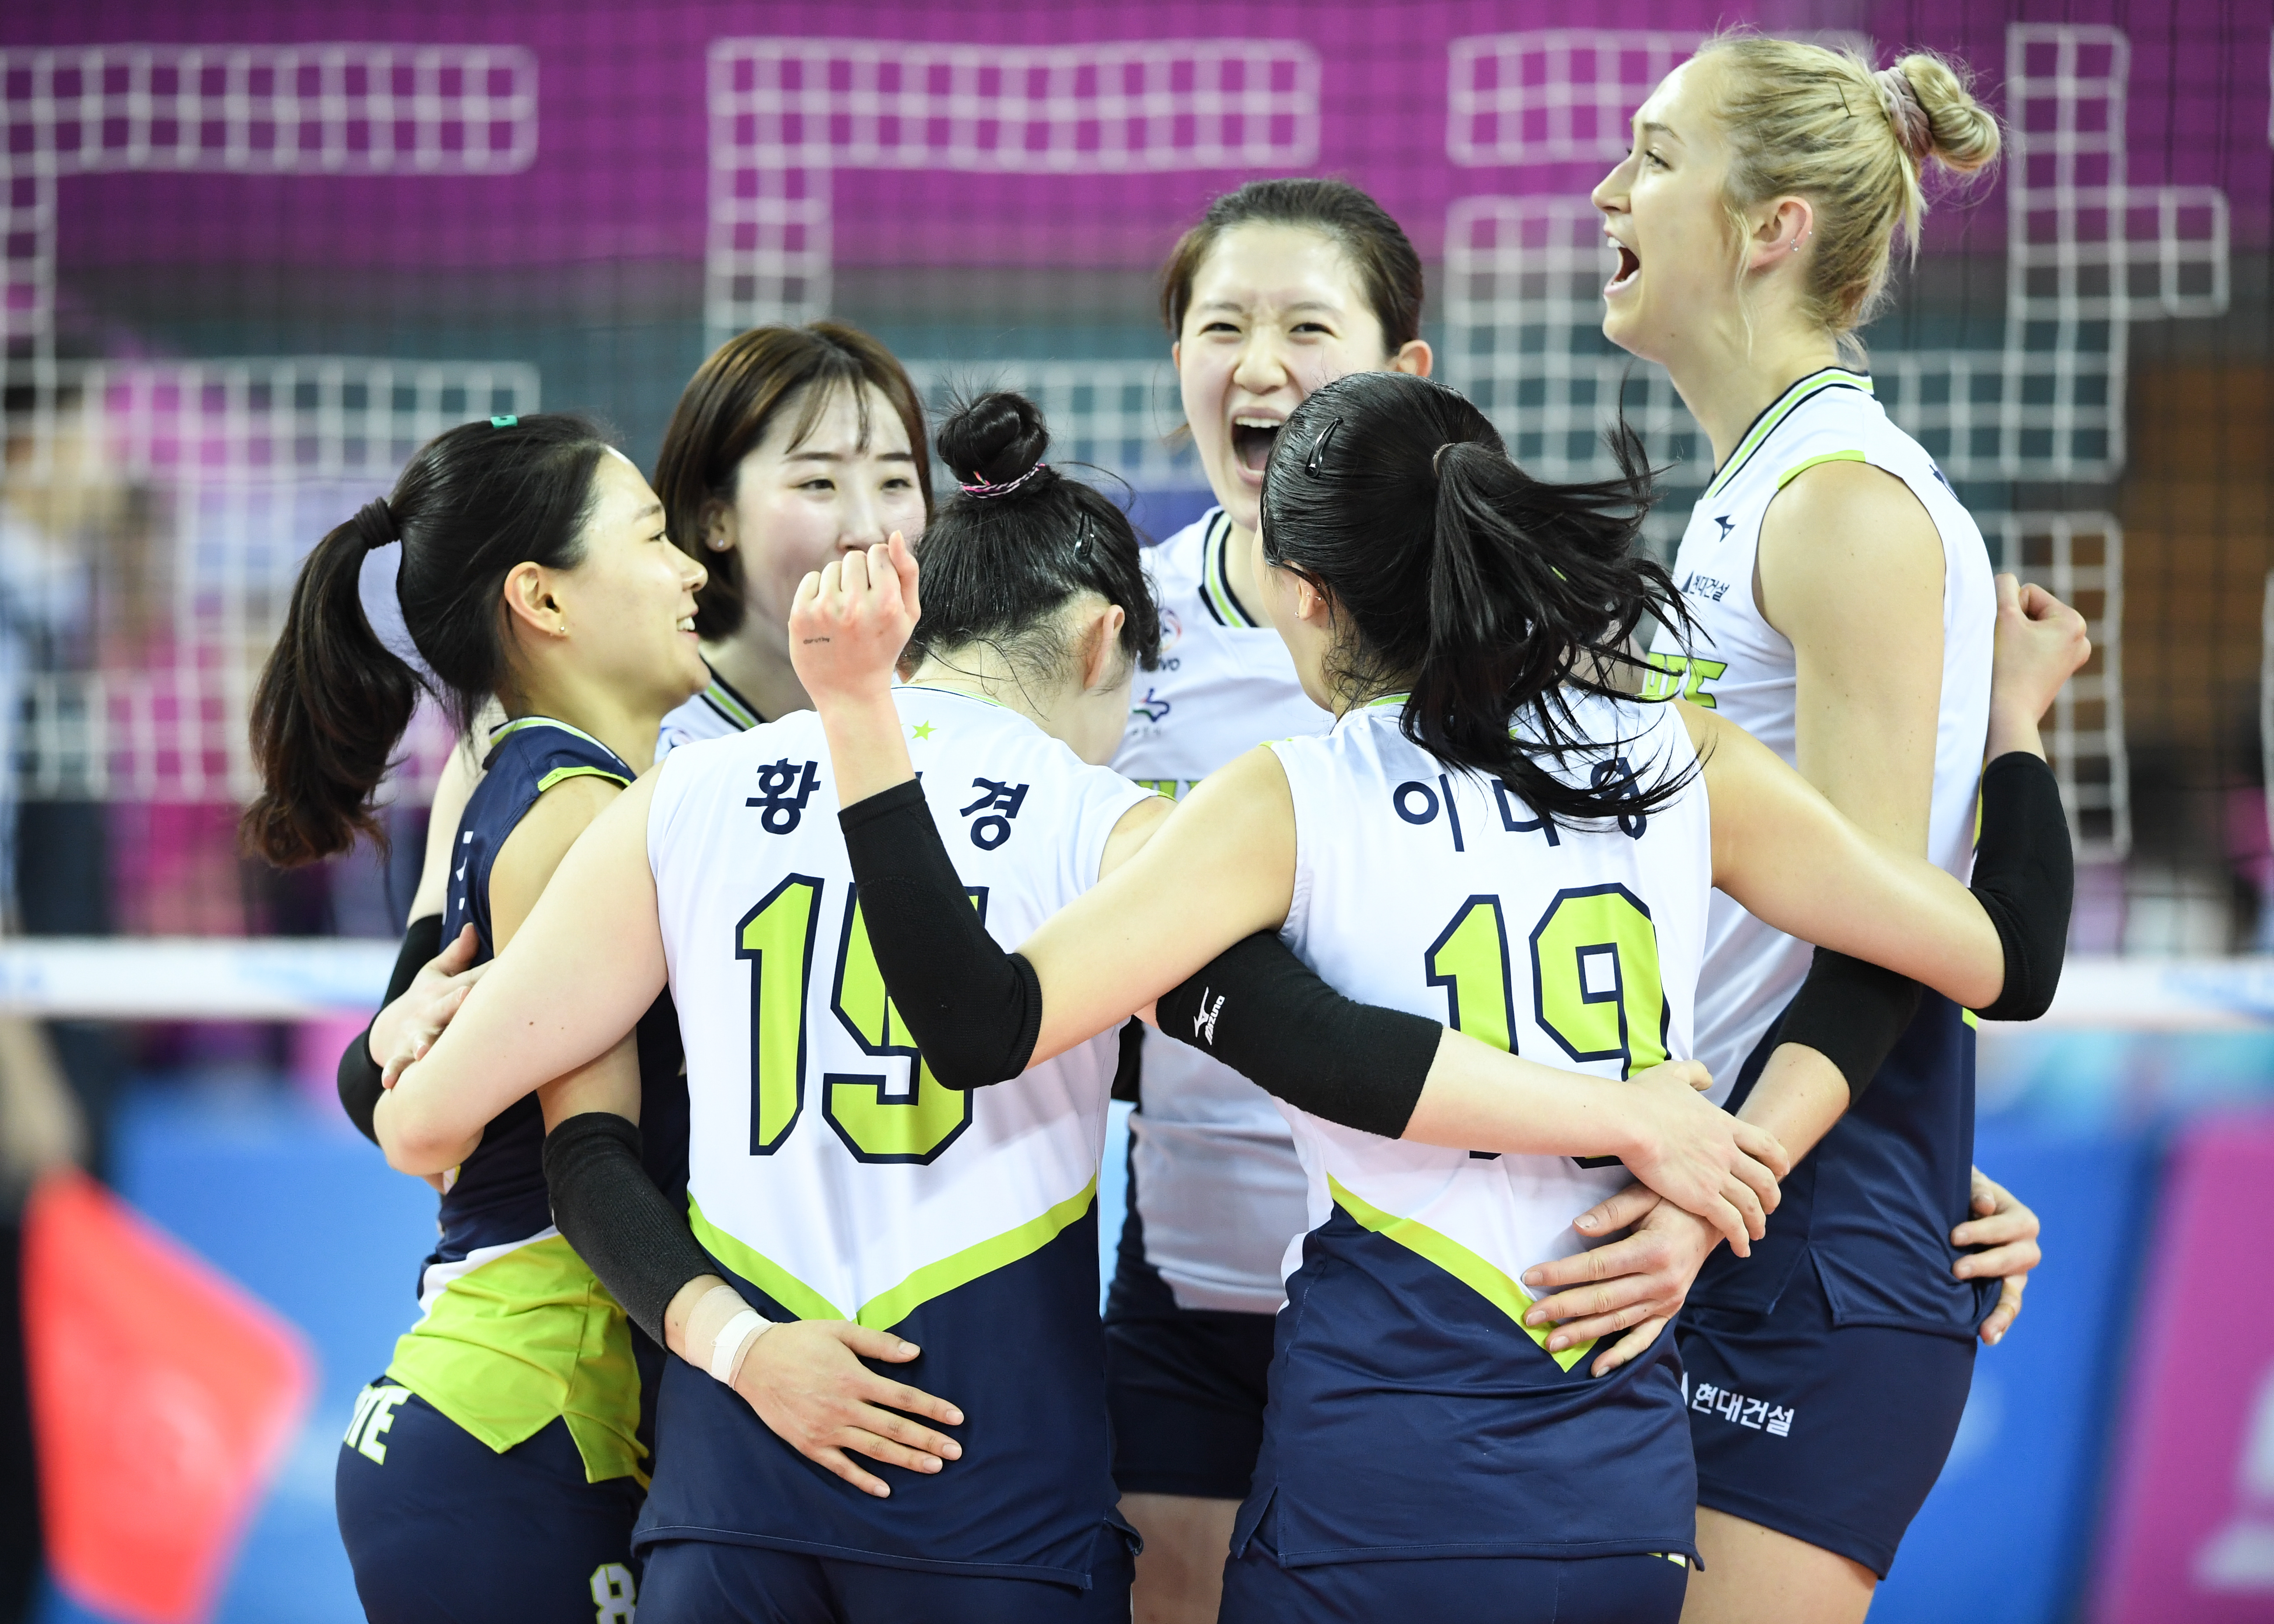 현대건설 선수들이 4일 인천 계양체육관에서 열린 2019~20 V리그 여자부 흥국생명과의 경기에서 득점 후 기뻐하고 있다. KOVO 제공